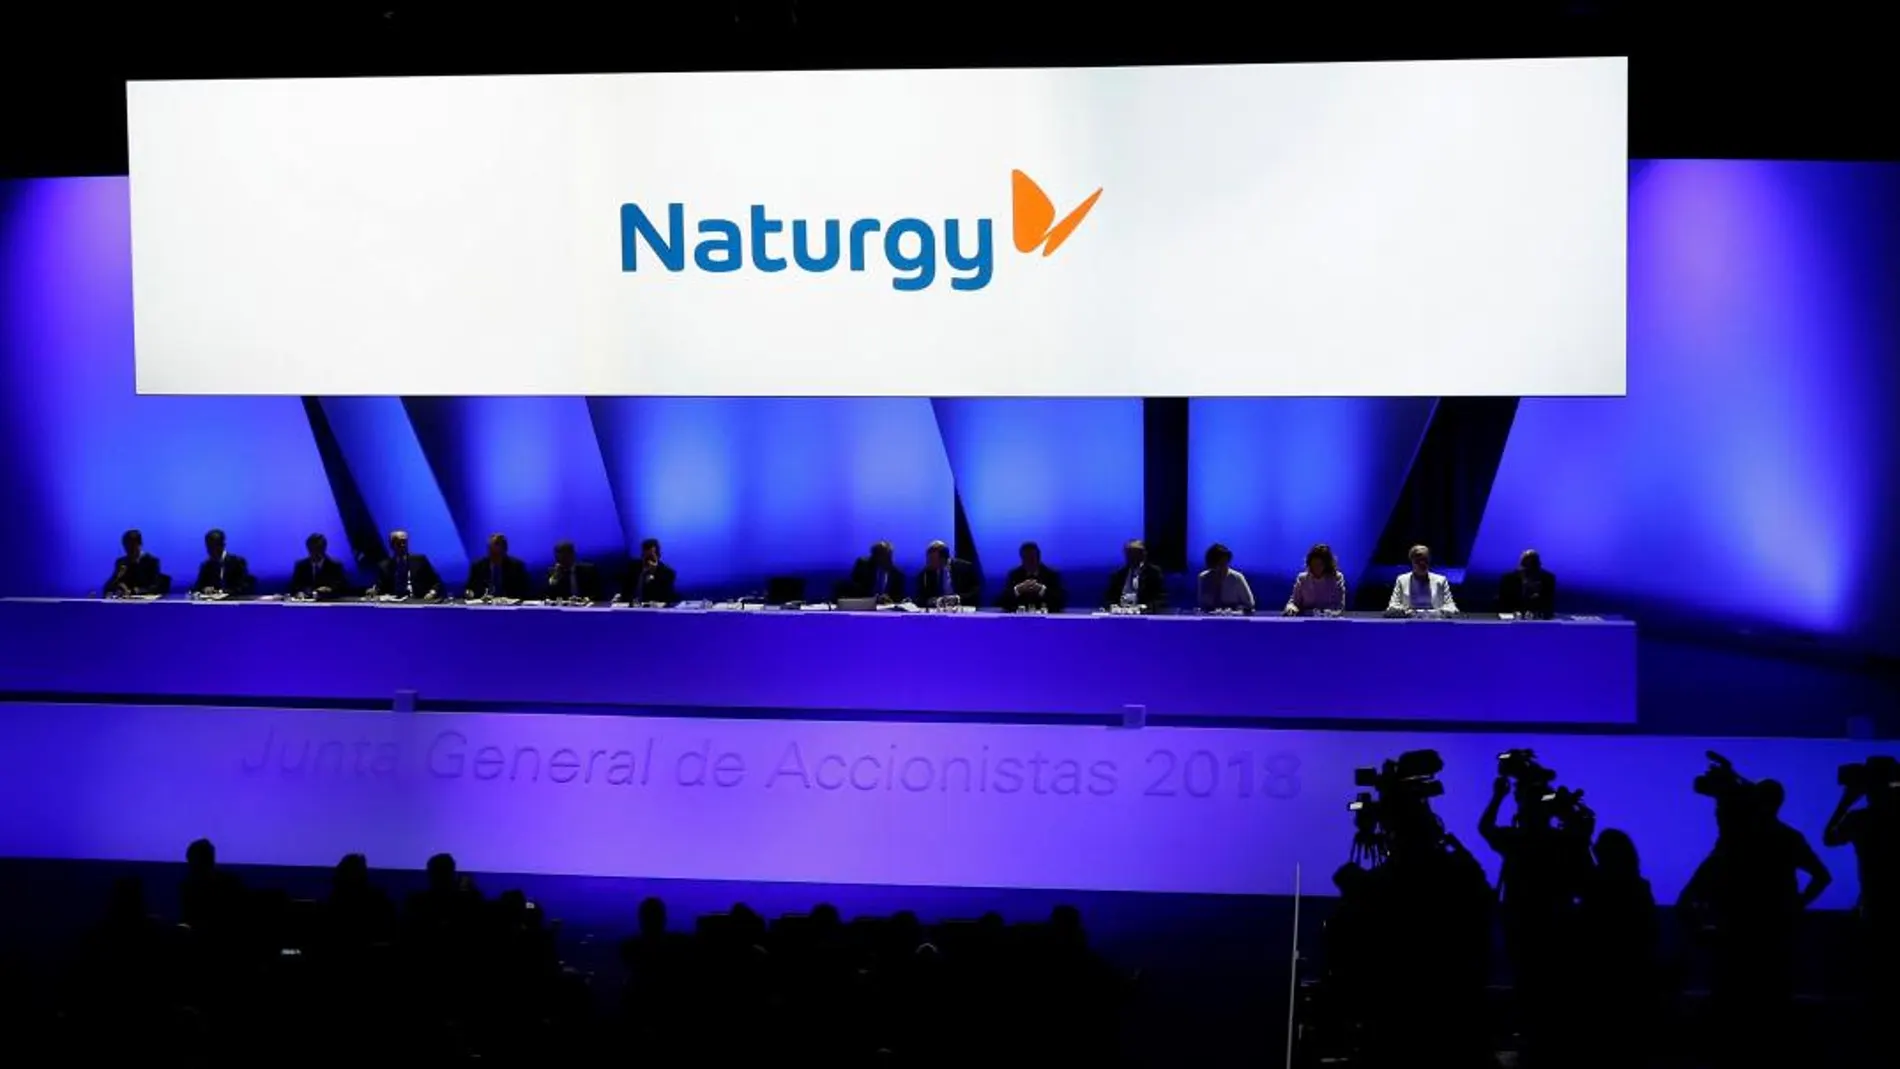 Junta General de Accionistas de Gas Natural Fenosa que ha adoptado hoy un nuevo nombre, Naturgy/Foto: Efe